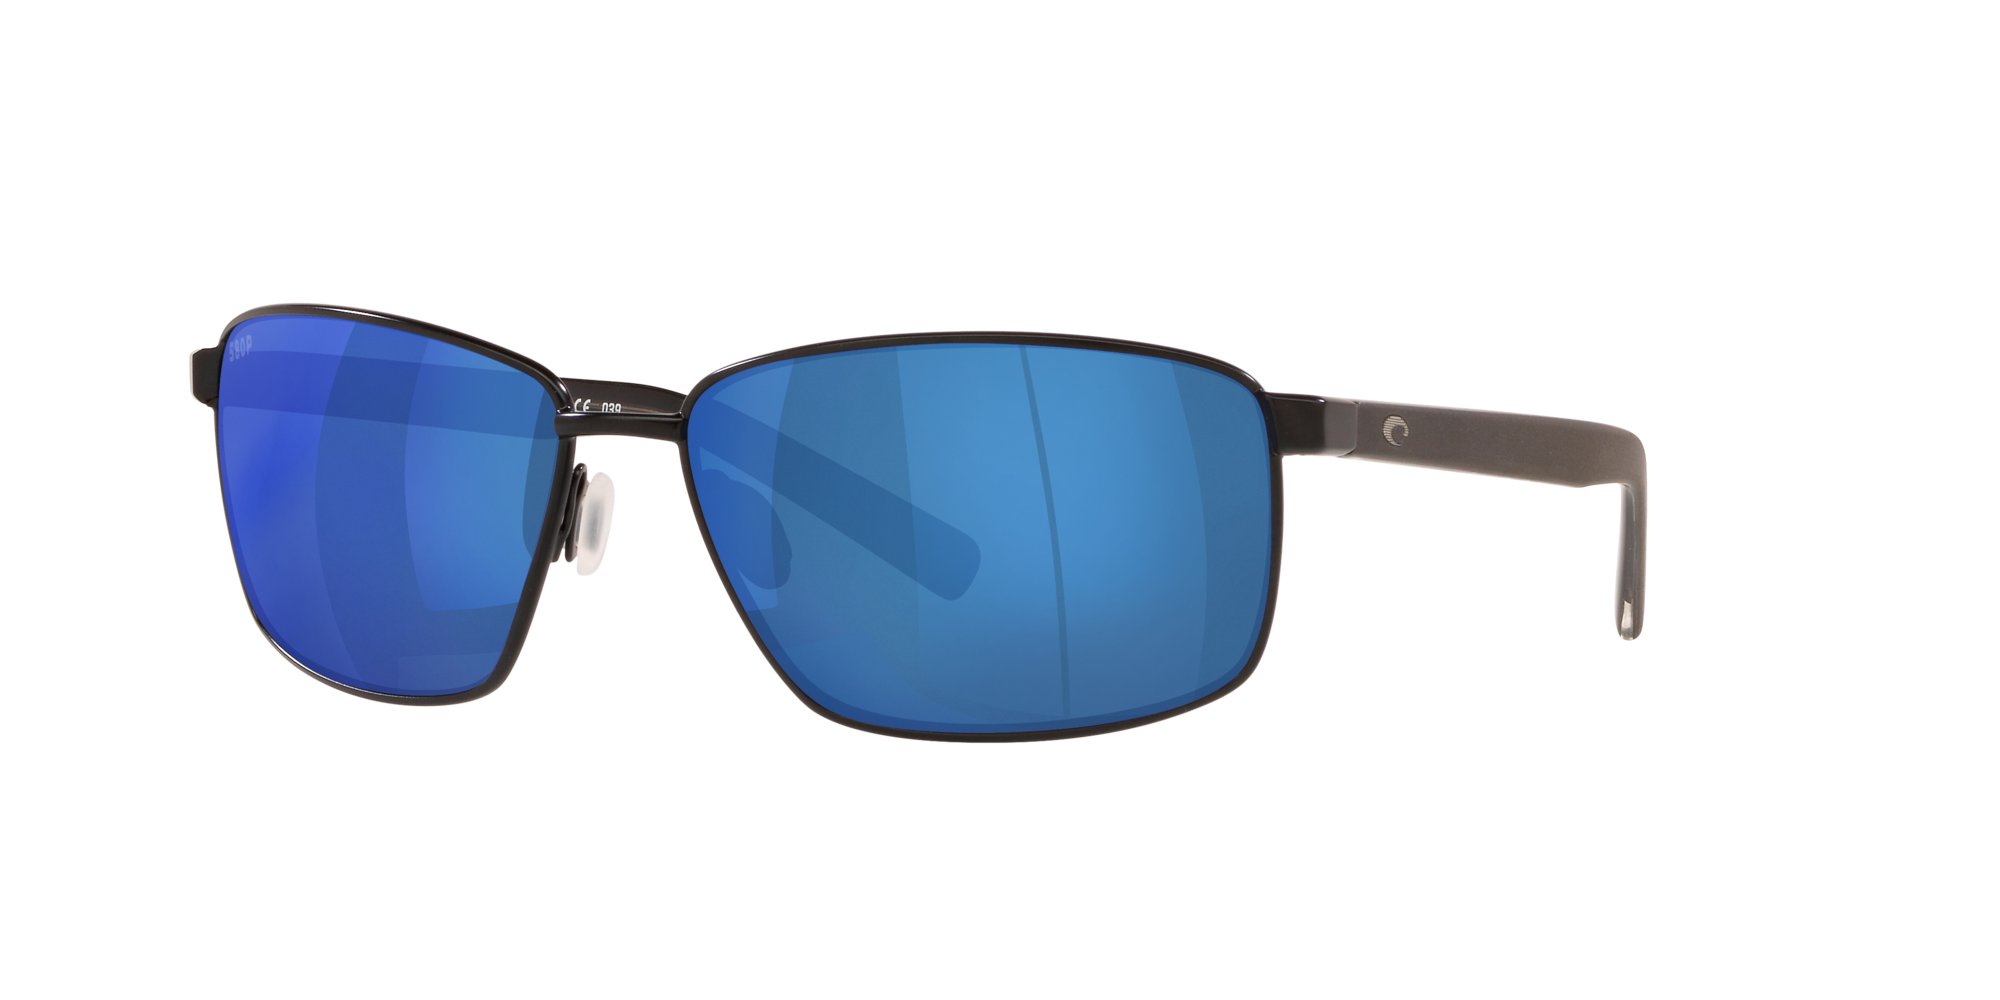 Ponce Polarized Sunglasses in Blue Mirror | Costa Del Mar®